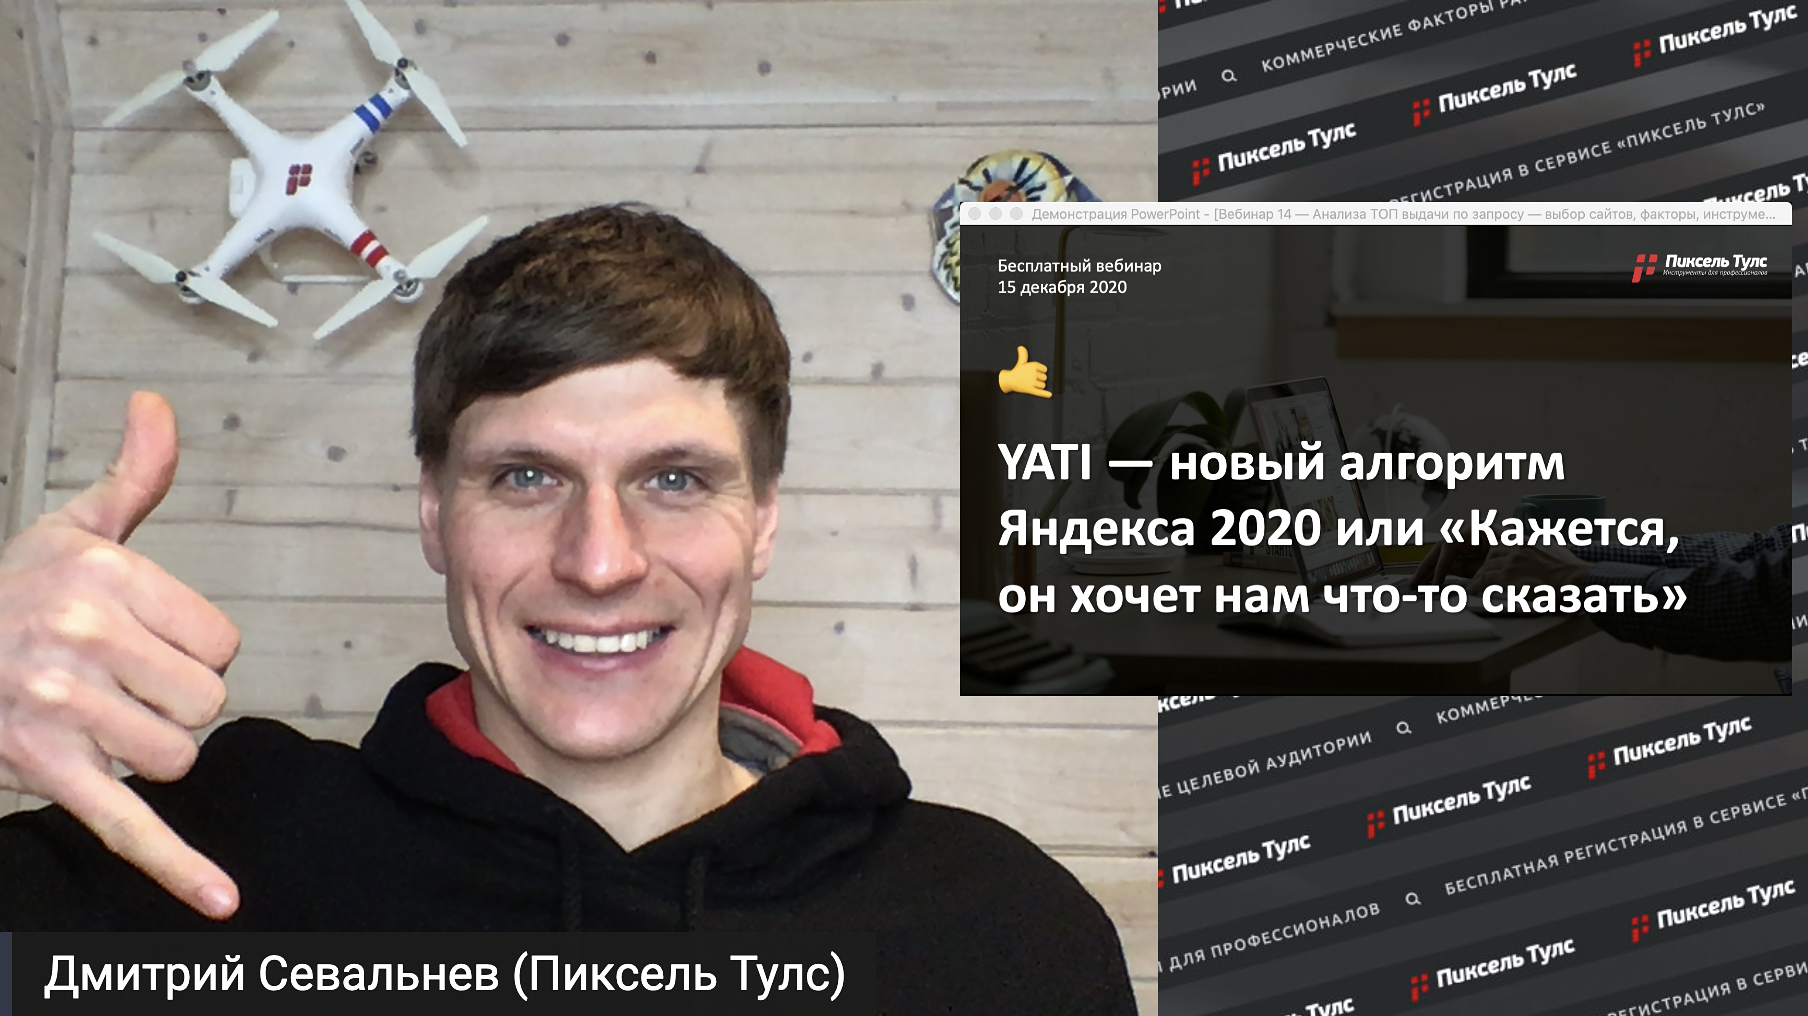 Вебинар YATI — новый алгоритм Яндекса 2020, практические советы и что уже известно?